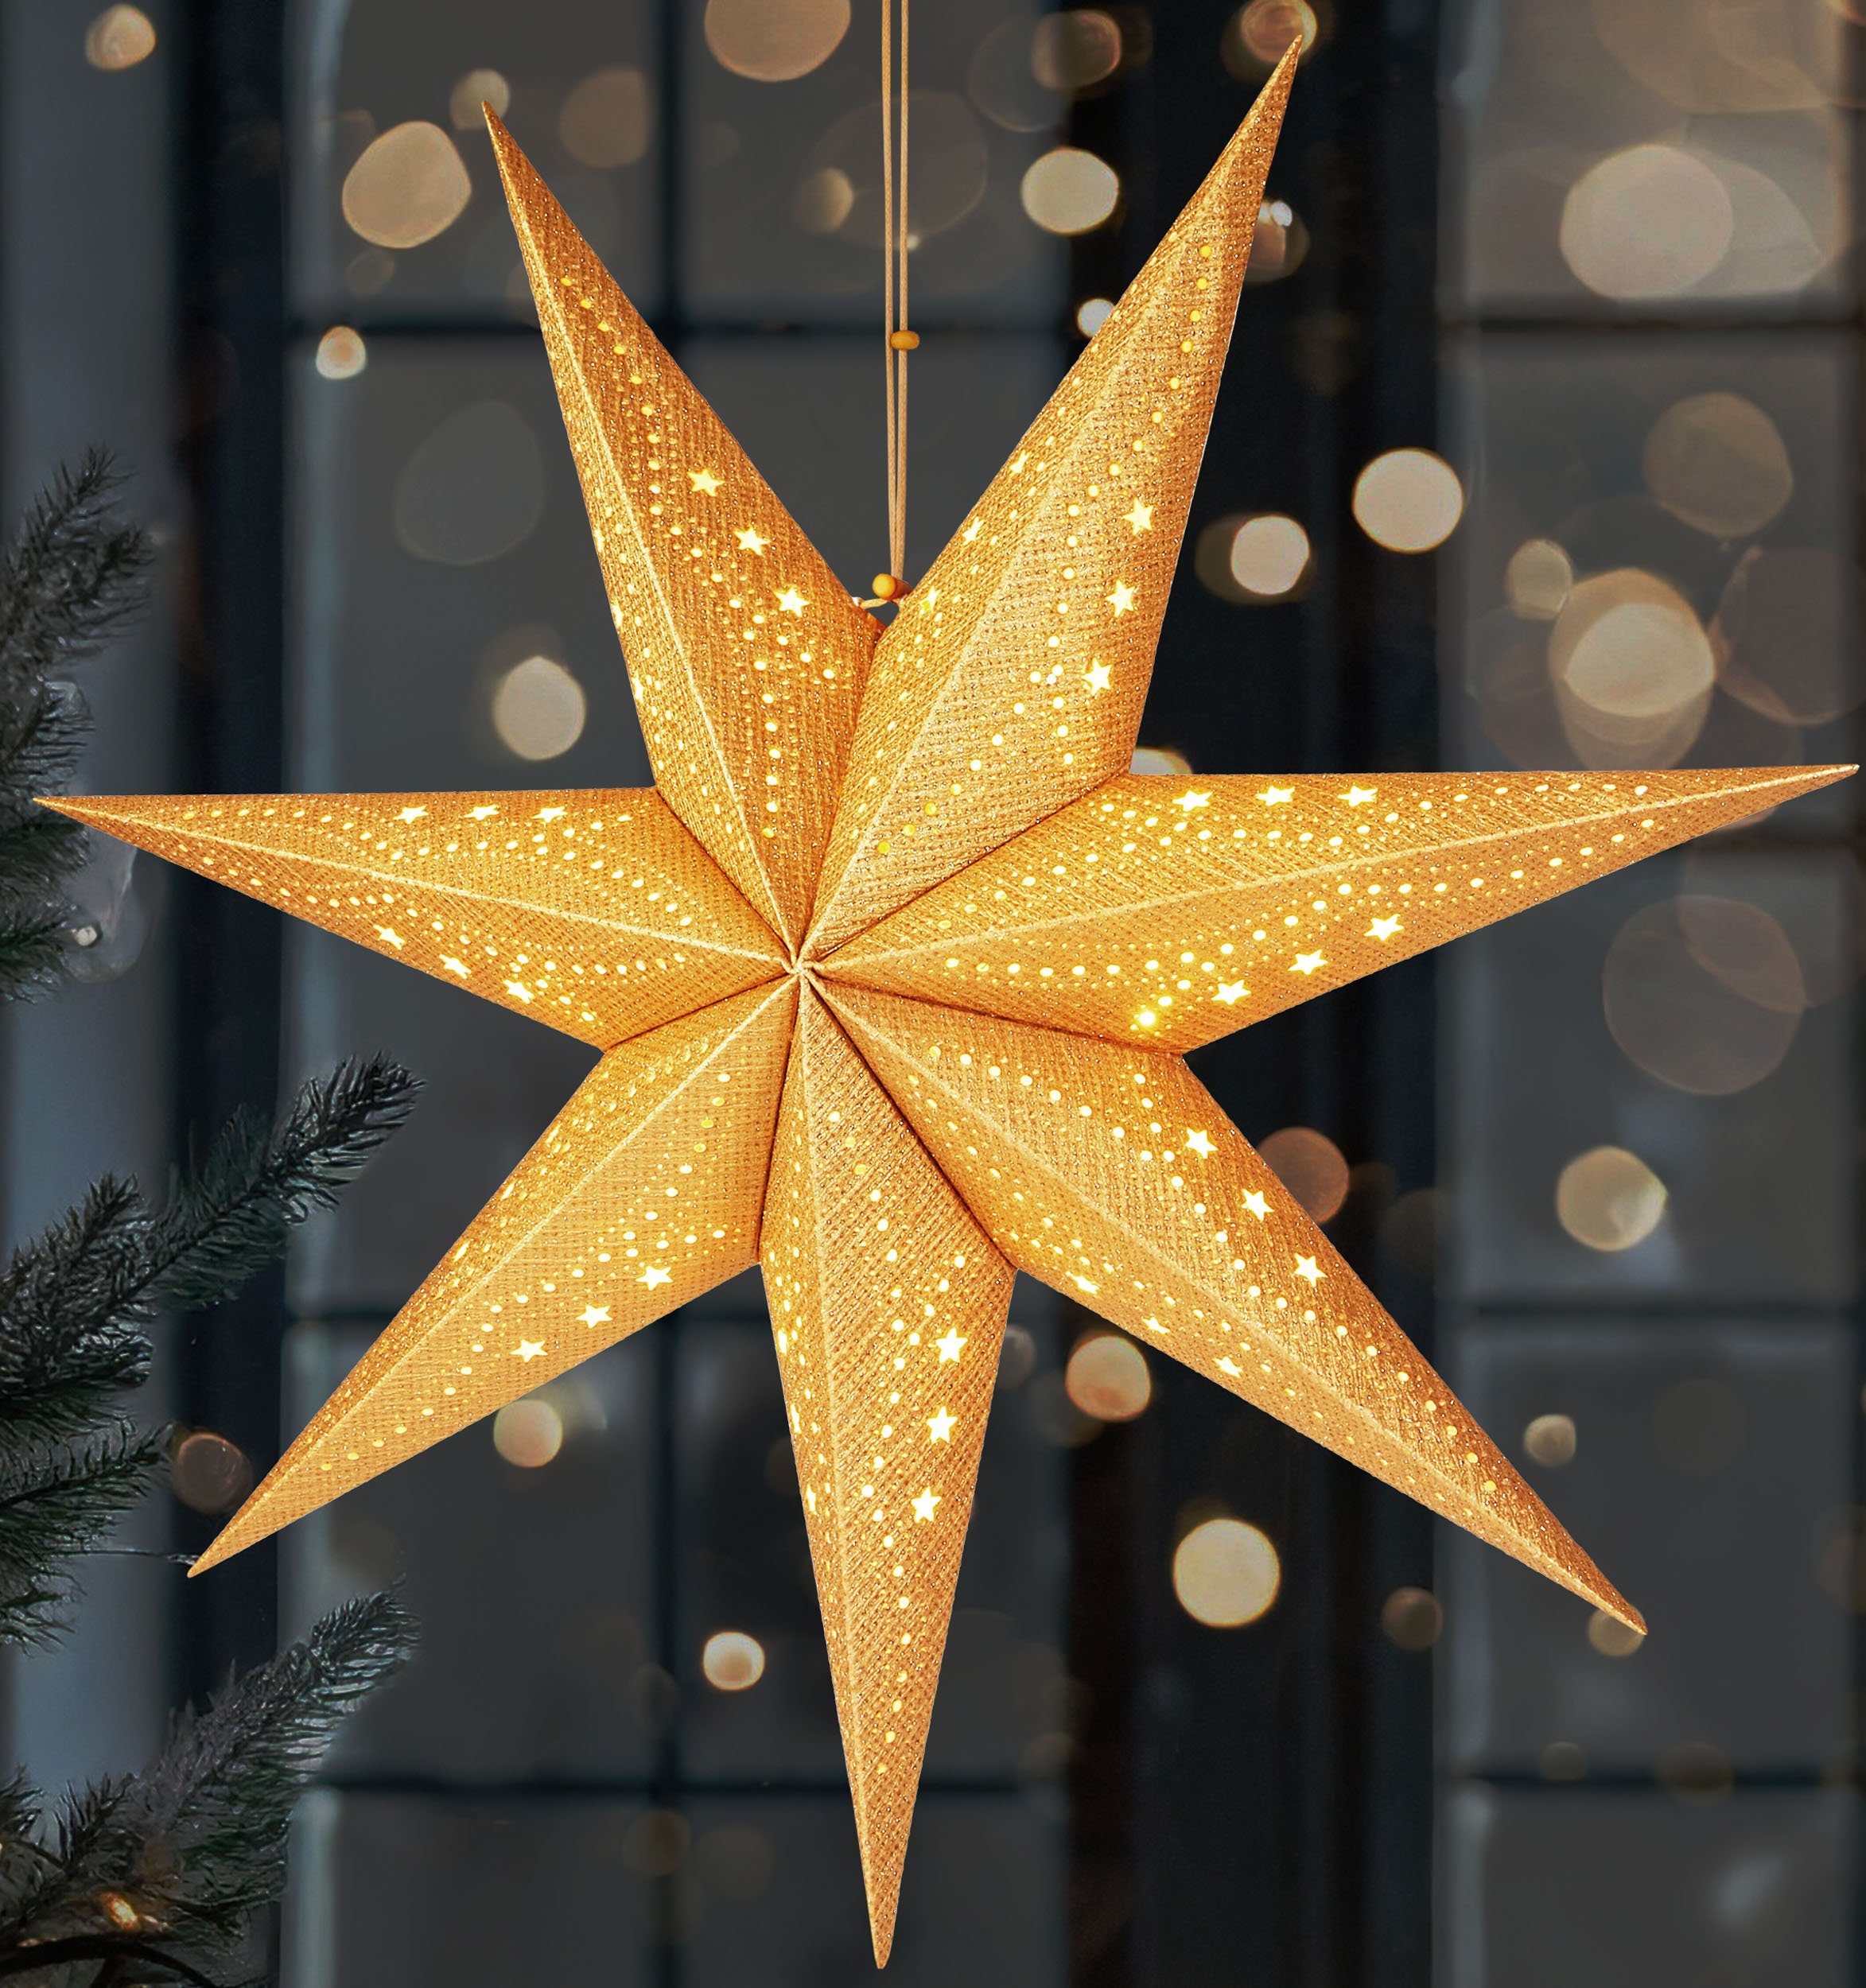 BRUBAKER LED Stern 3D Weihnachtsstern zum Aufhängen - LED Papierstern mit Timer, Batteriebetrieben und Beleuchtet, LED fest integriert, Warmweiß, 60 cm Adventsstern mit modernem Muster - Leuchtstern Deko Weihnachten Gold